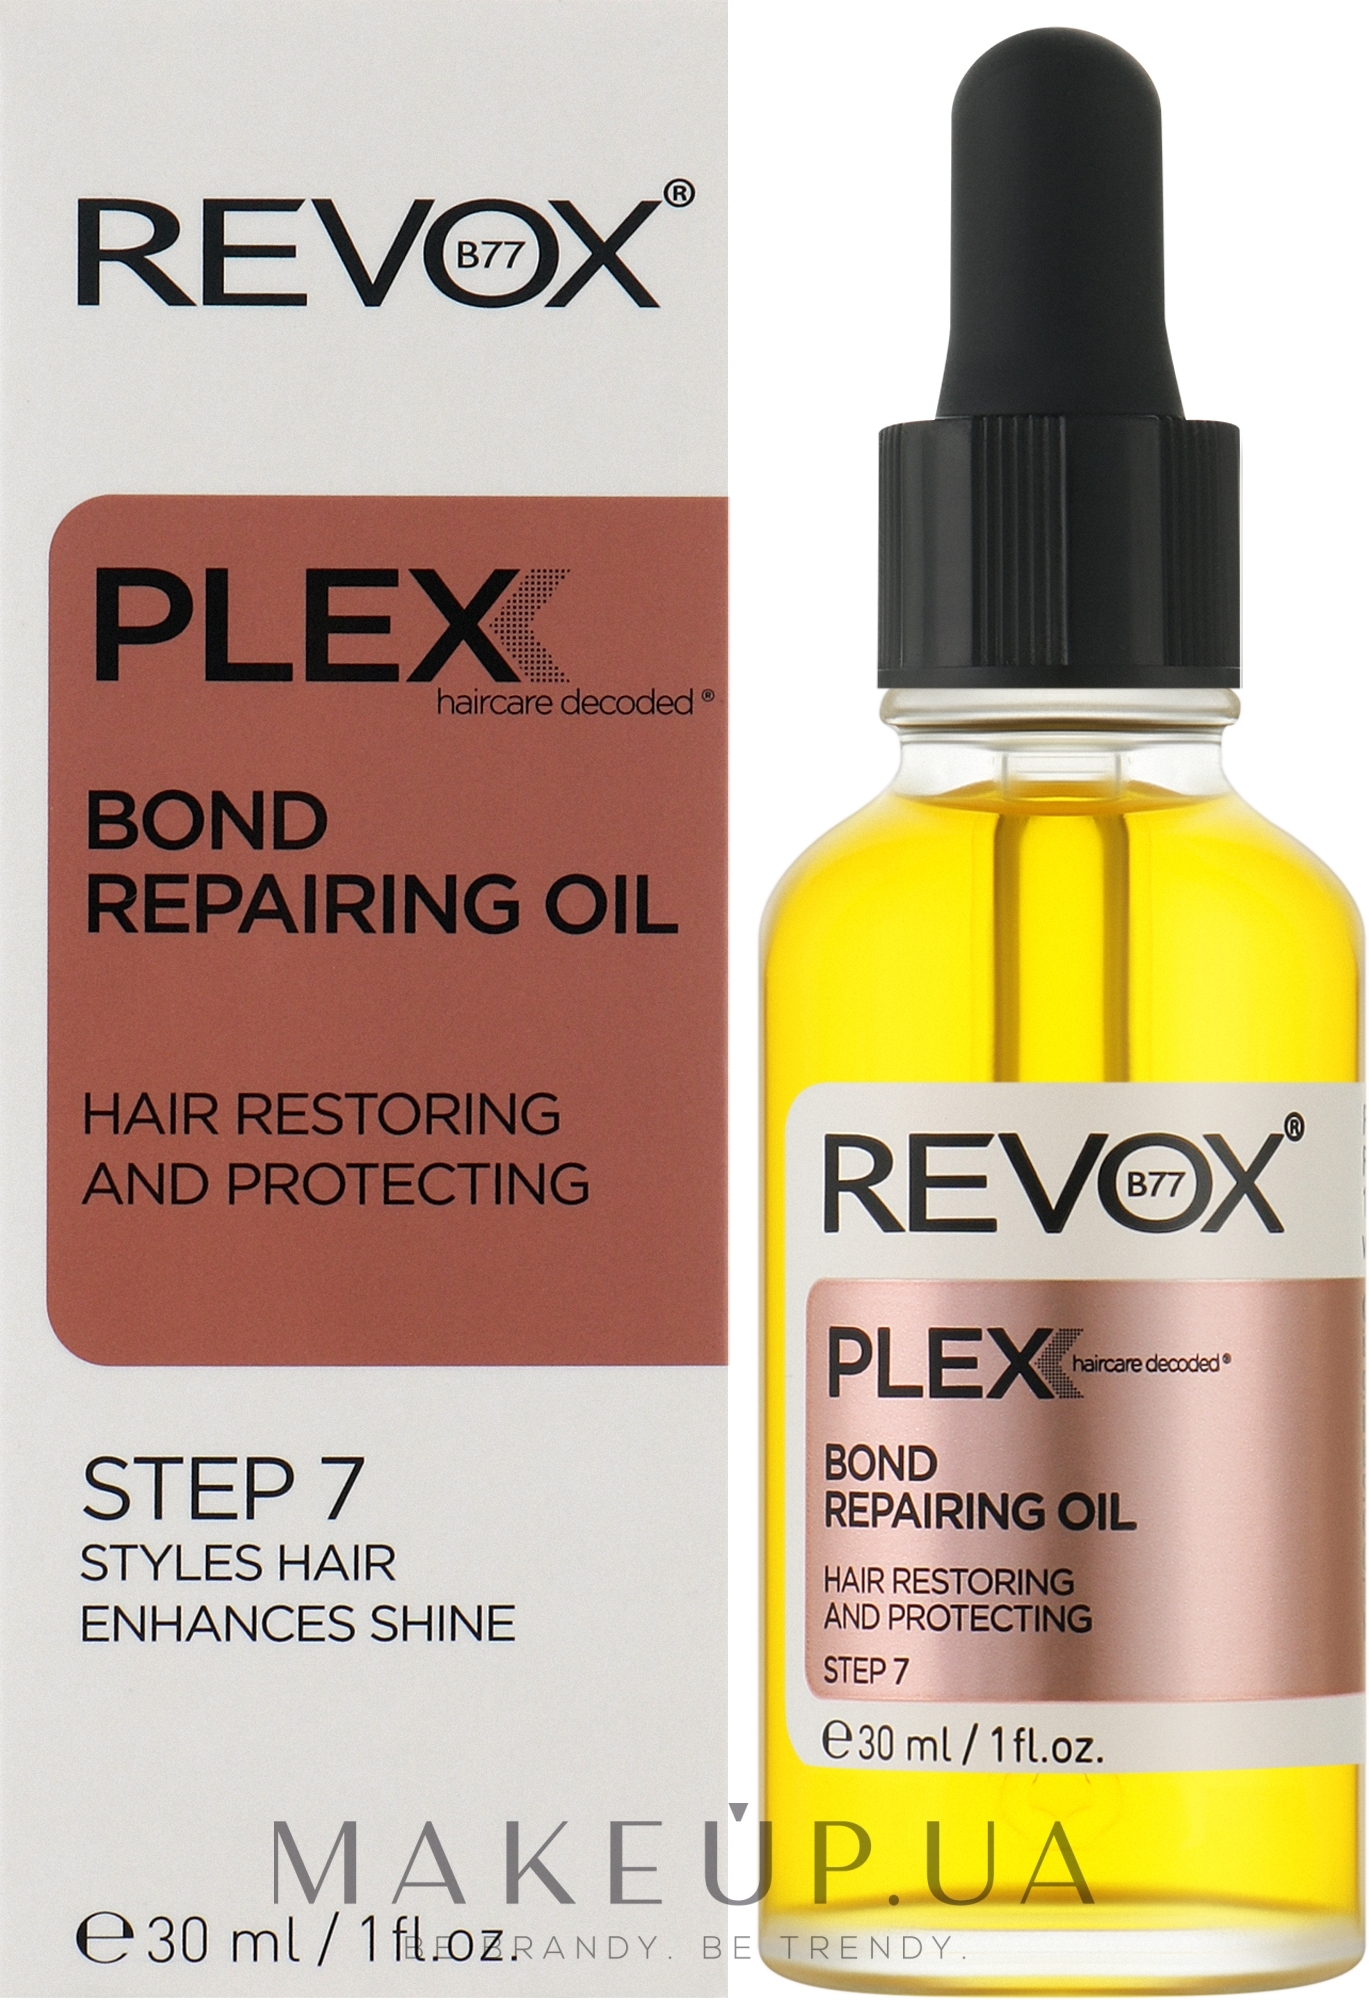 Олія для відновлення і термозахисту волосся, крок 7 - Revox B77 Plex Bond Repairing Oil STEP 7 — фото 30ml